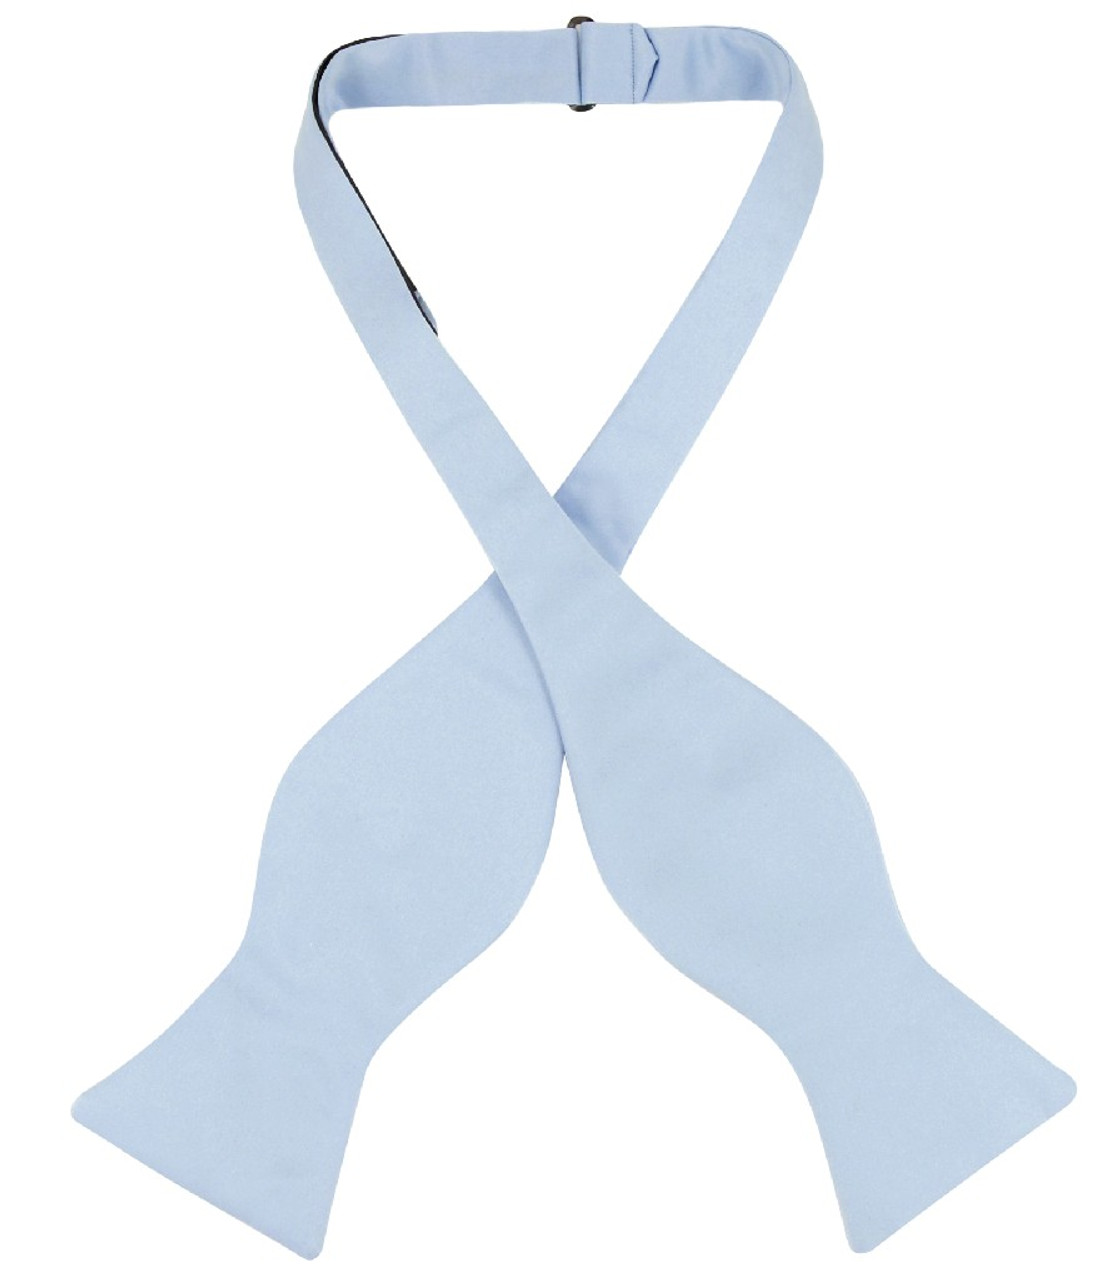 Vesuvio Napoli Self Tie Bow Tie Solid Baby Blue Color Mens BowTie